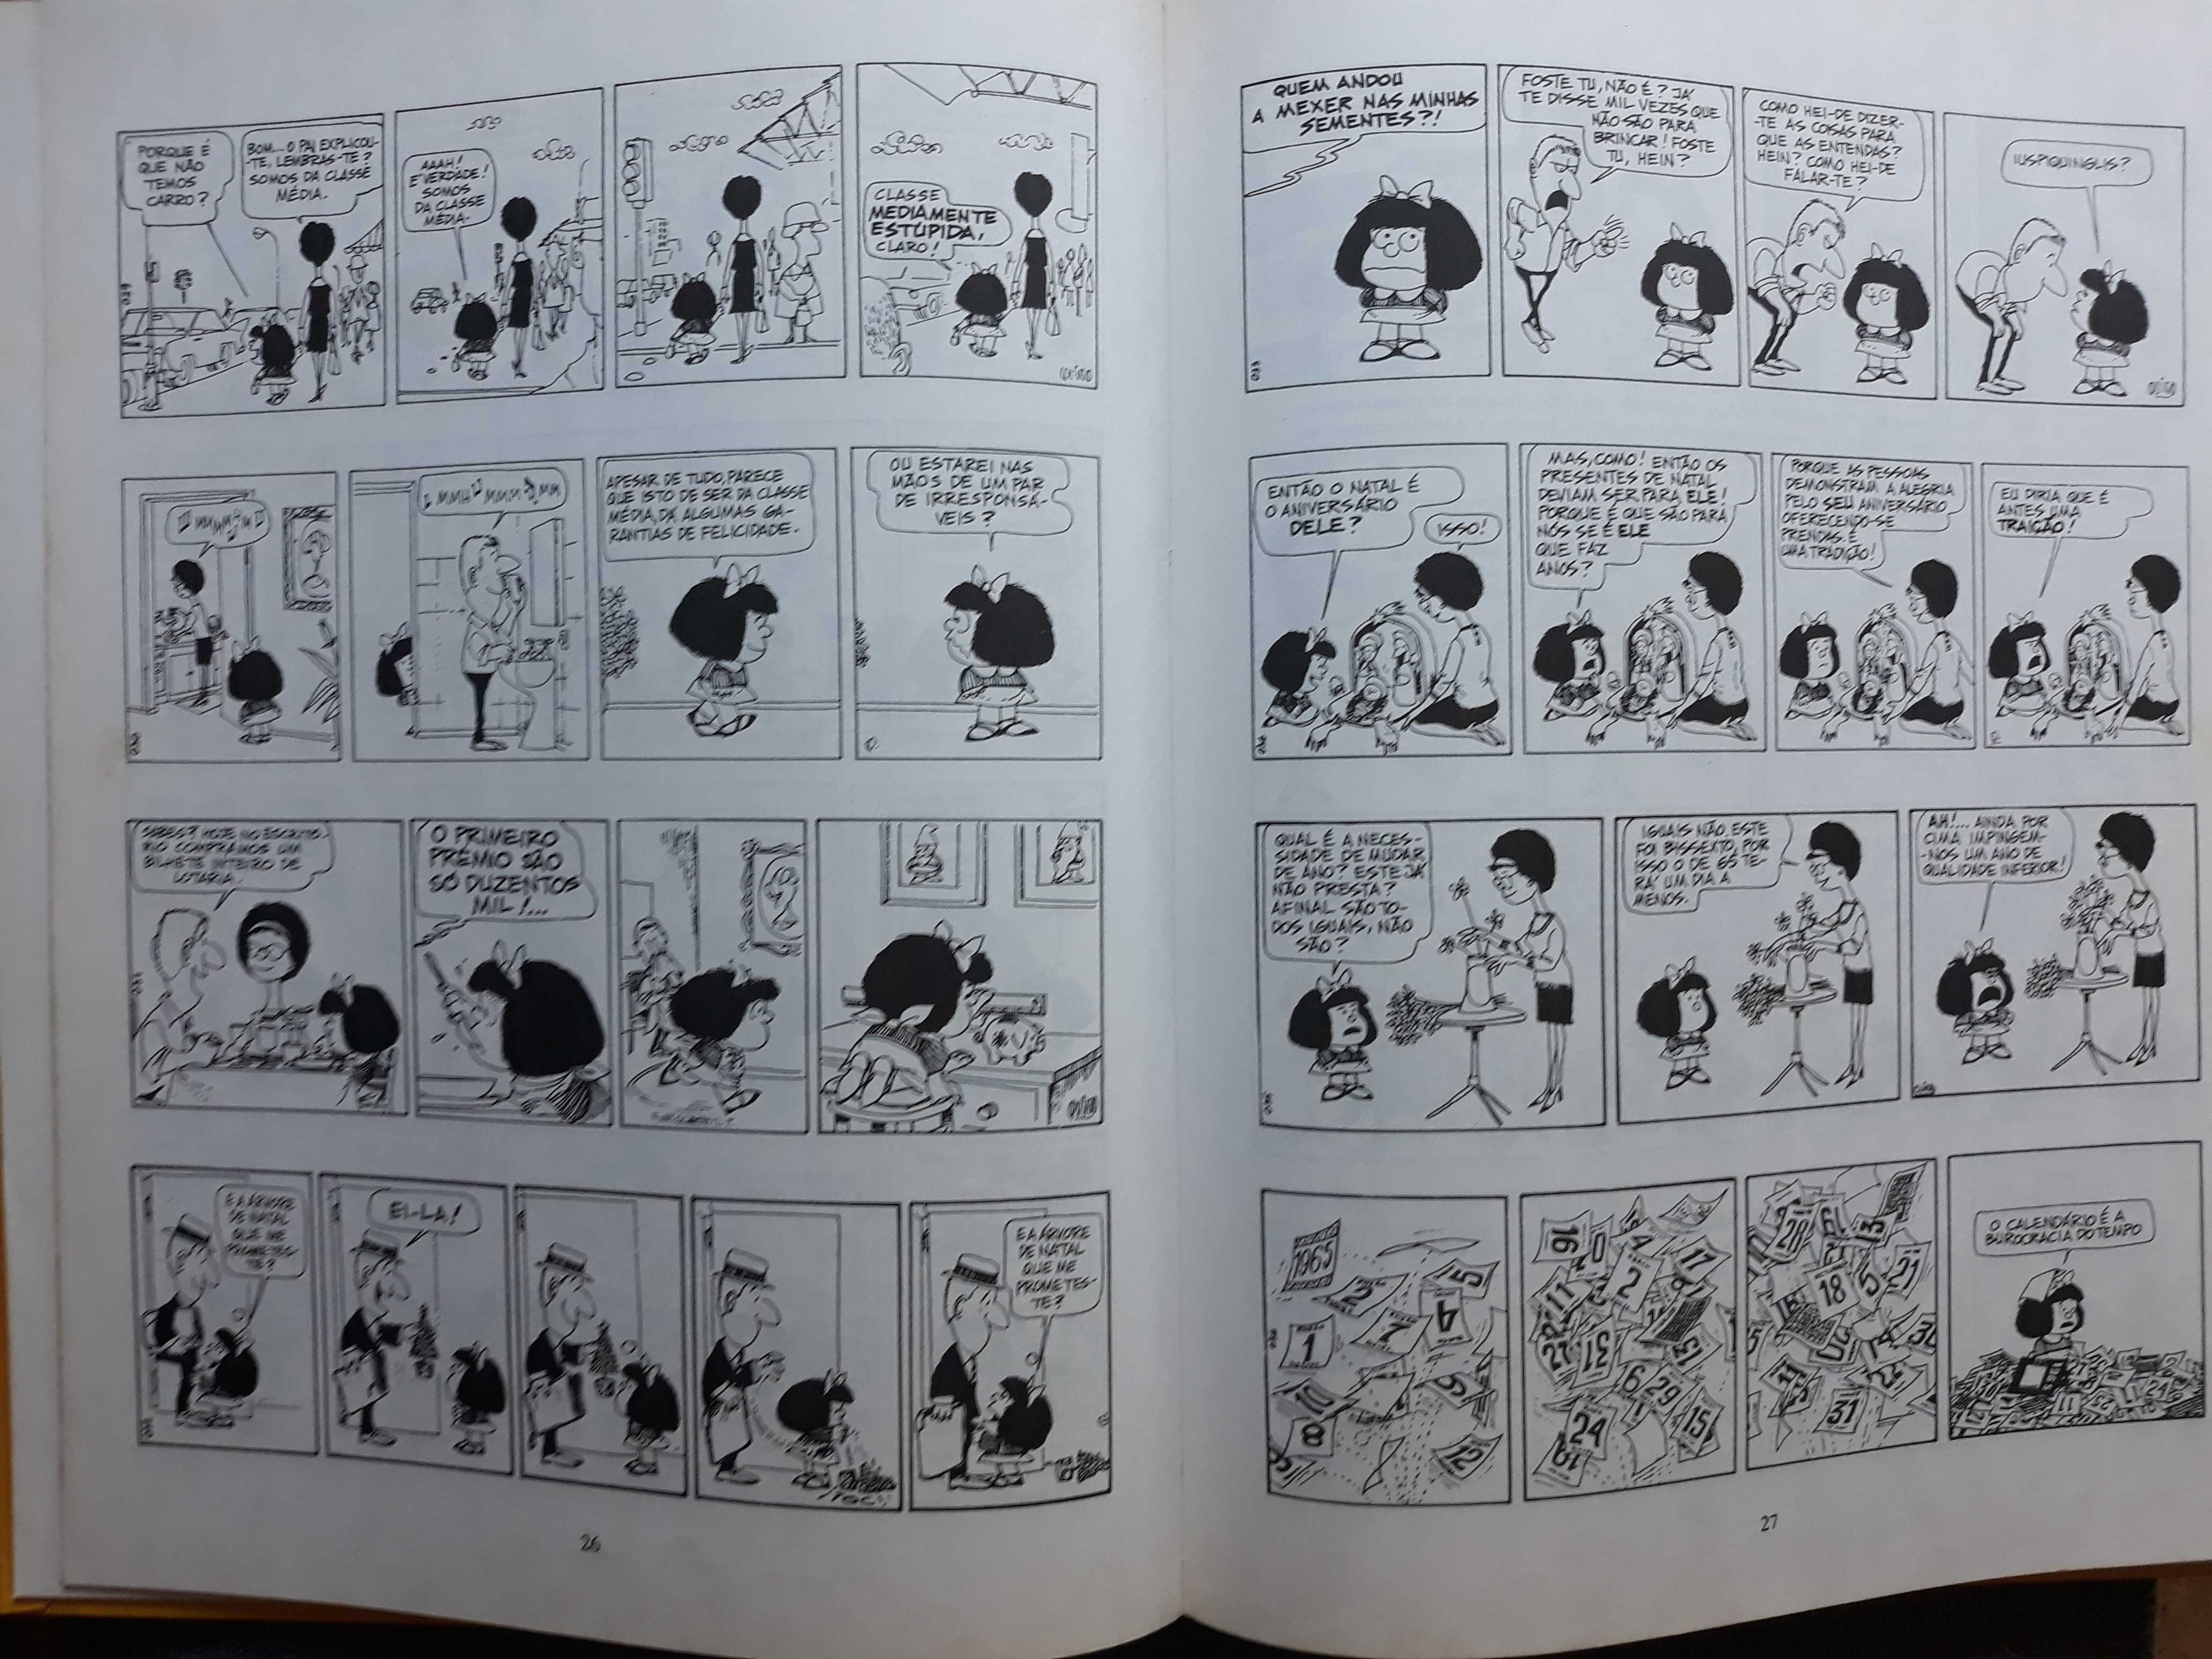 Livro Quino - Mafalda Inédita das Publicações D. Quixote 1990